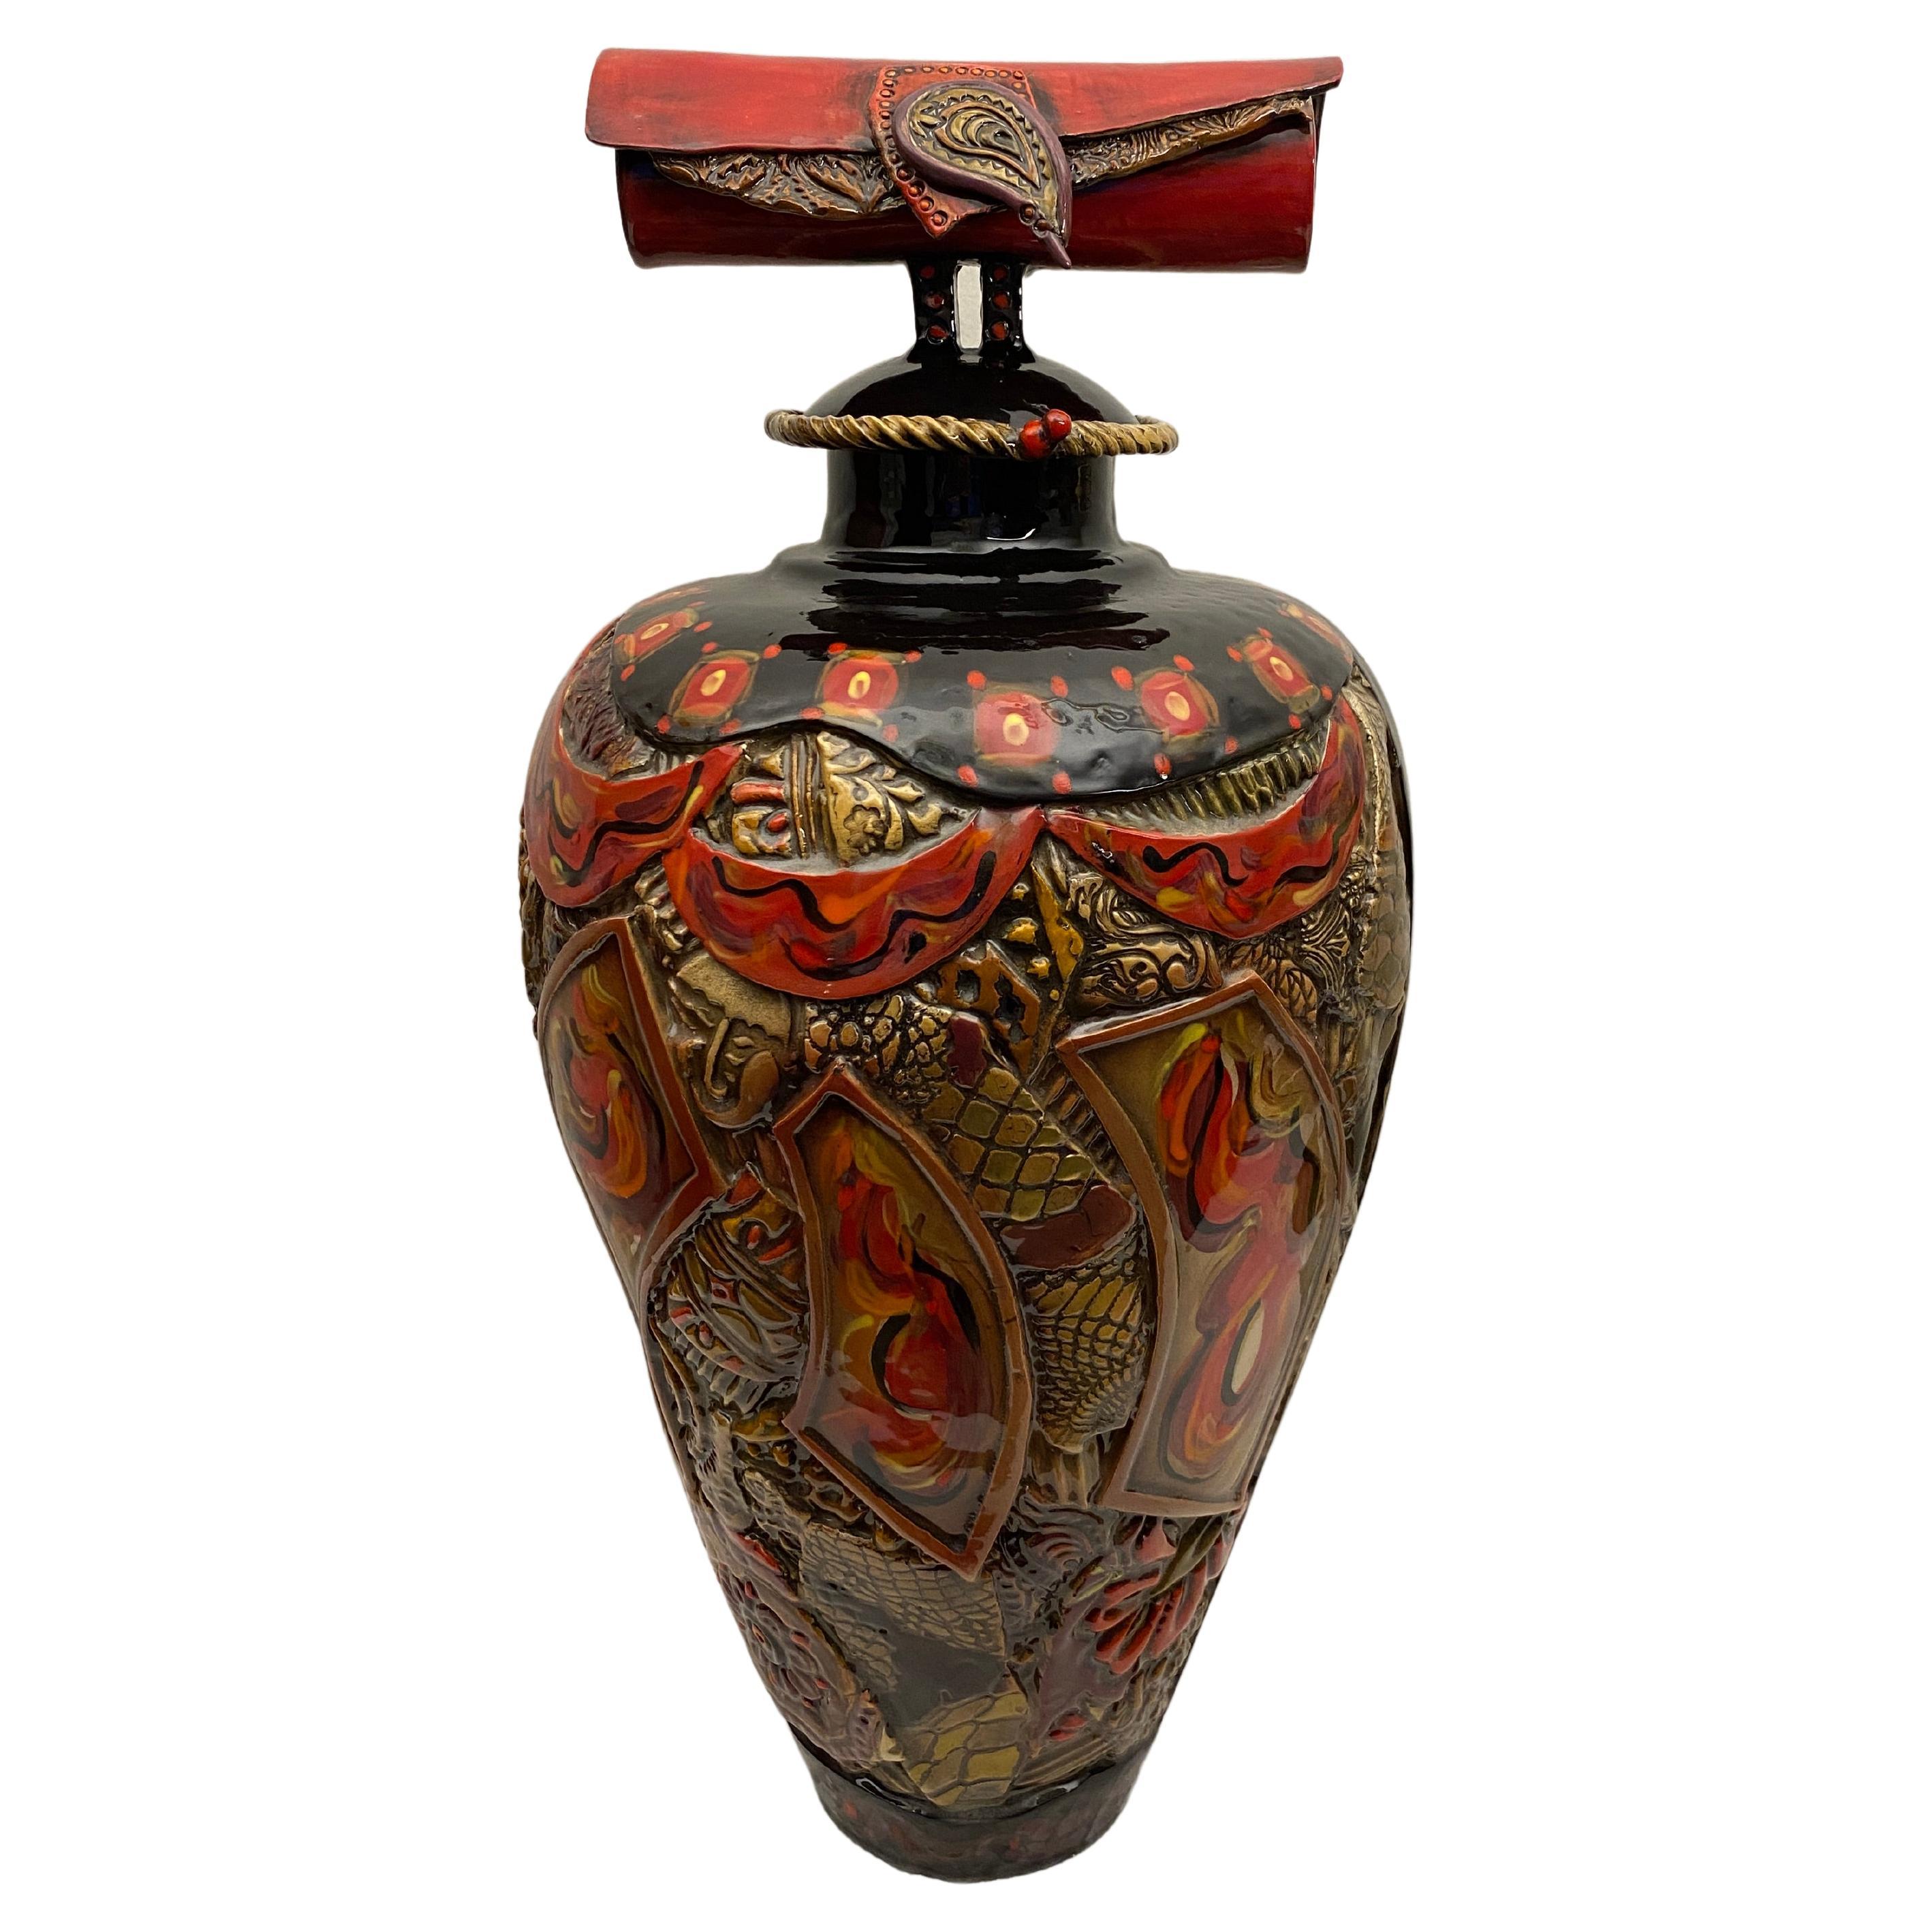 Large Studio Pottery Japanese Style Ceramic Vase by Gail Markiewicz